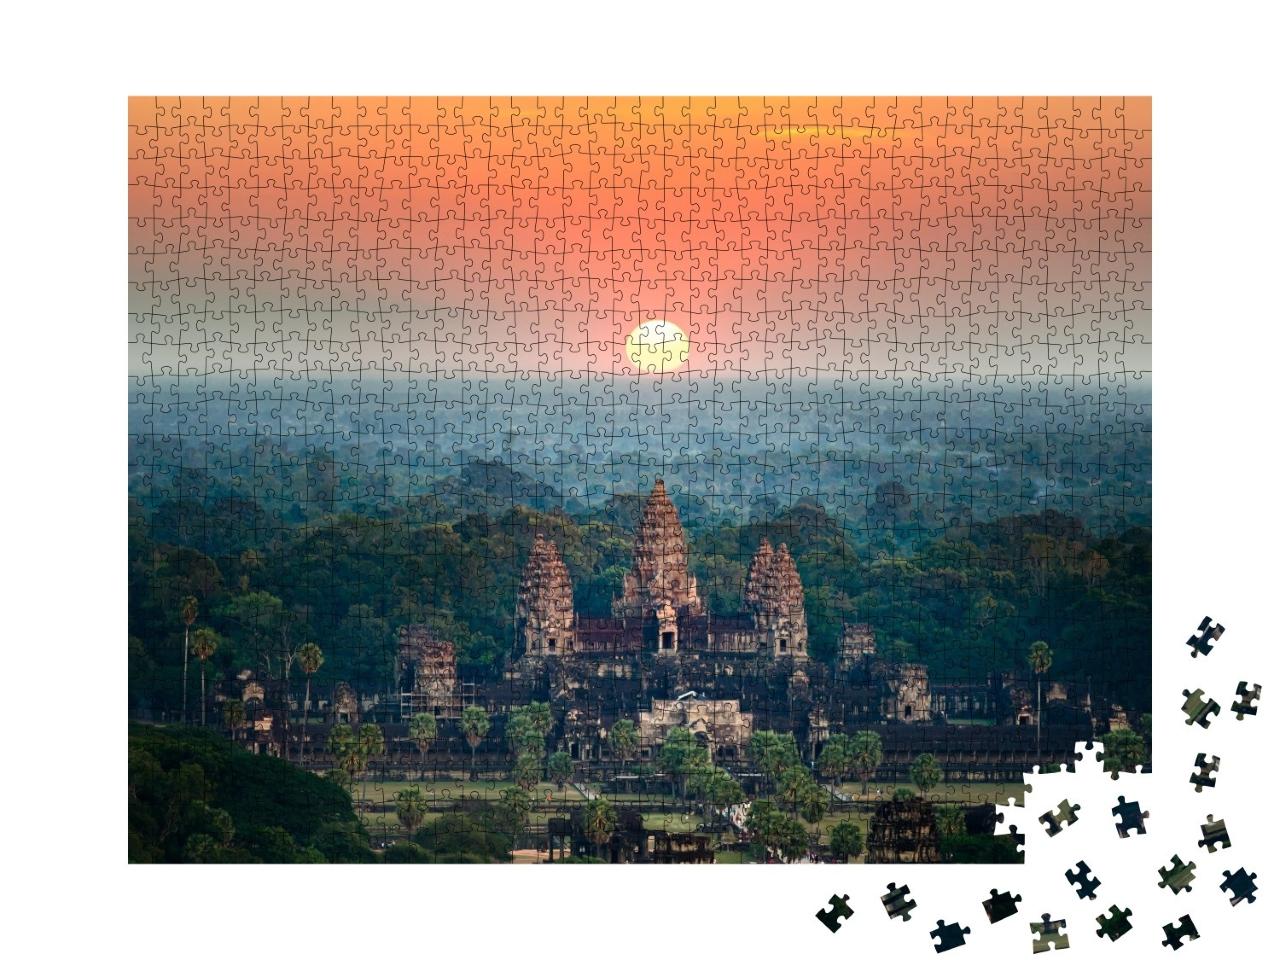 Puzzle de 1000 pièces « Angkor Vat au lever du soleil, Siem Reap, Cambodge »